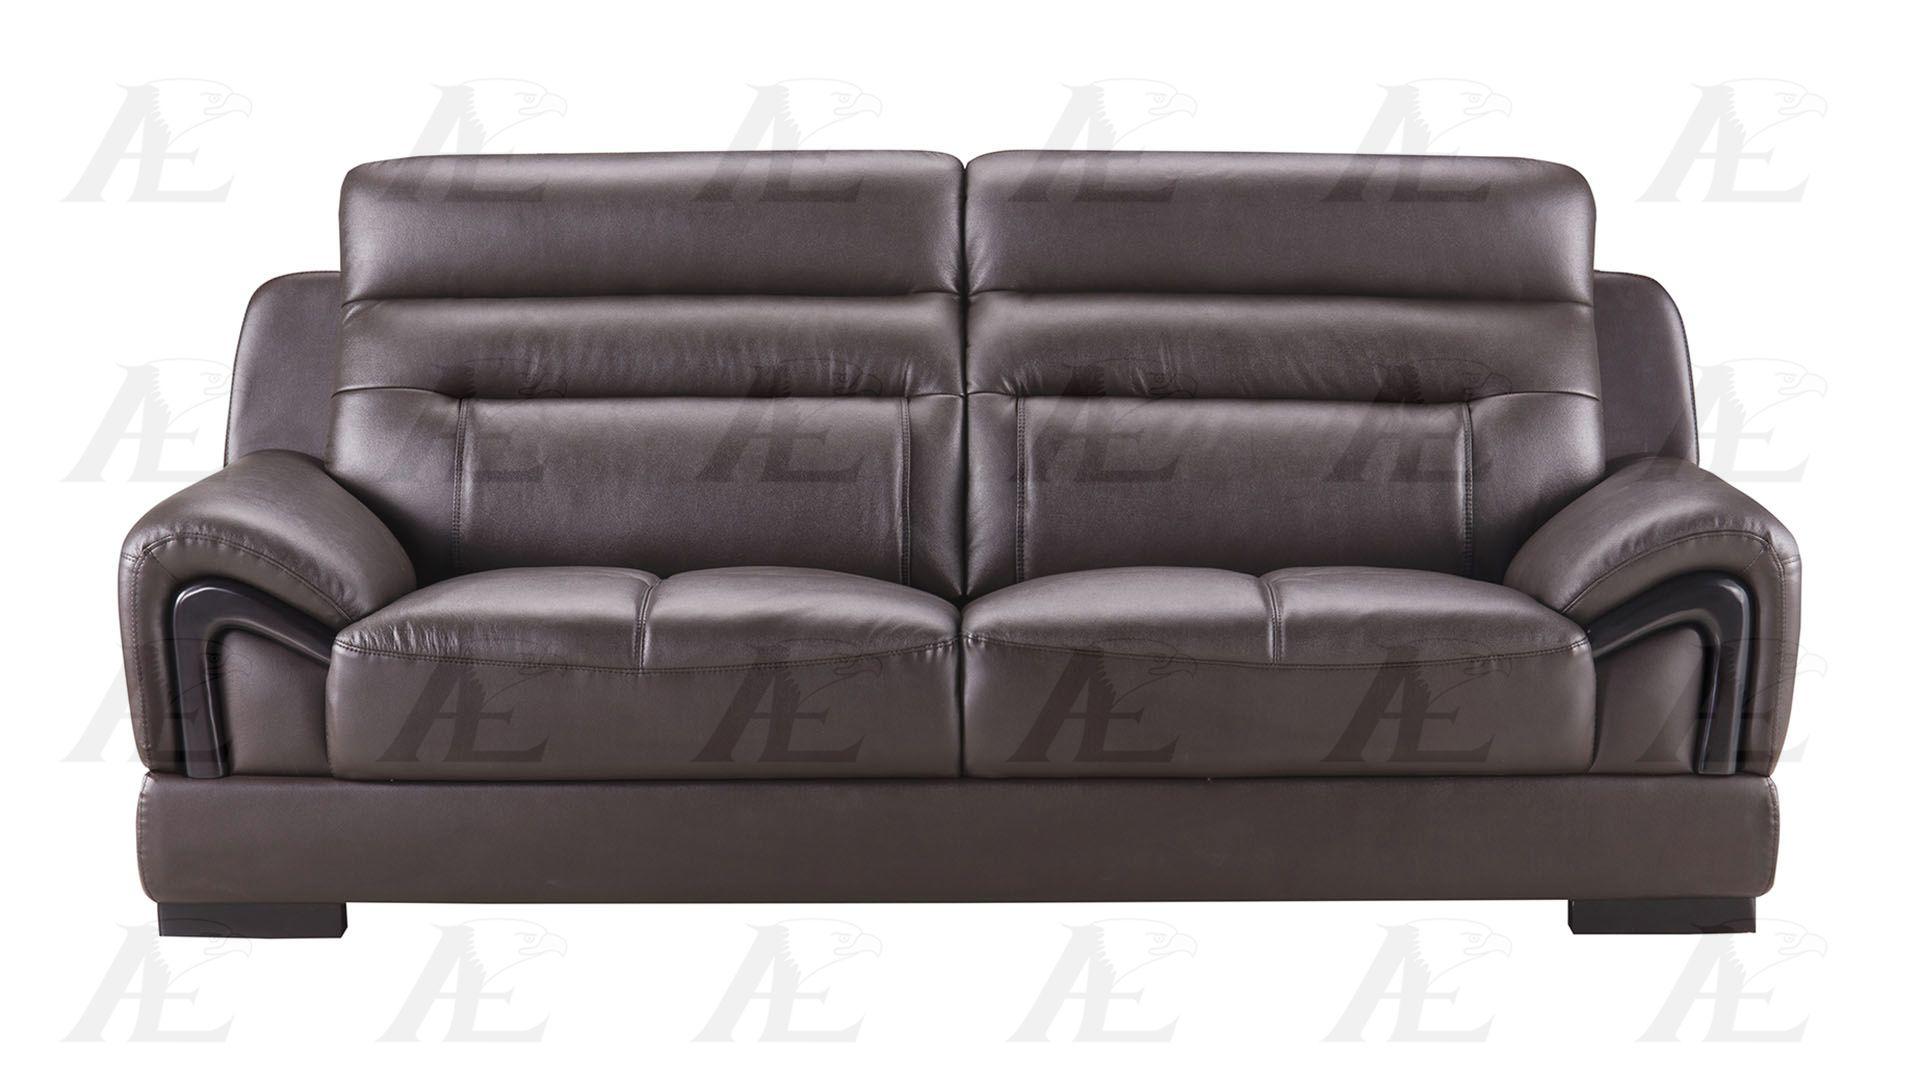 

    
American Eagle Furniture EK-B120-DC Modern Dark Chocolate Genuine Leather Sofa
